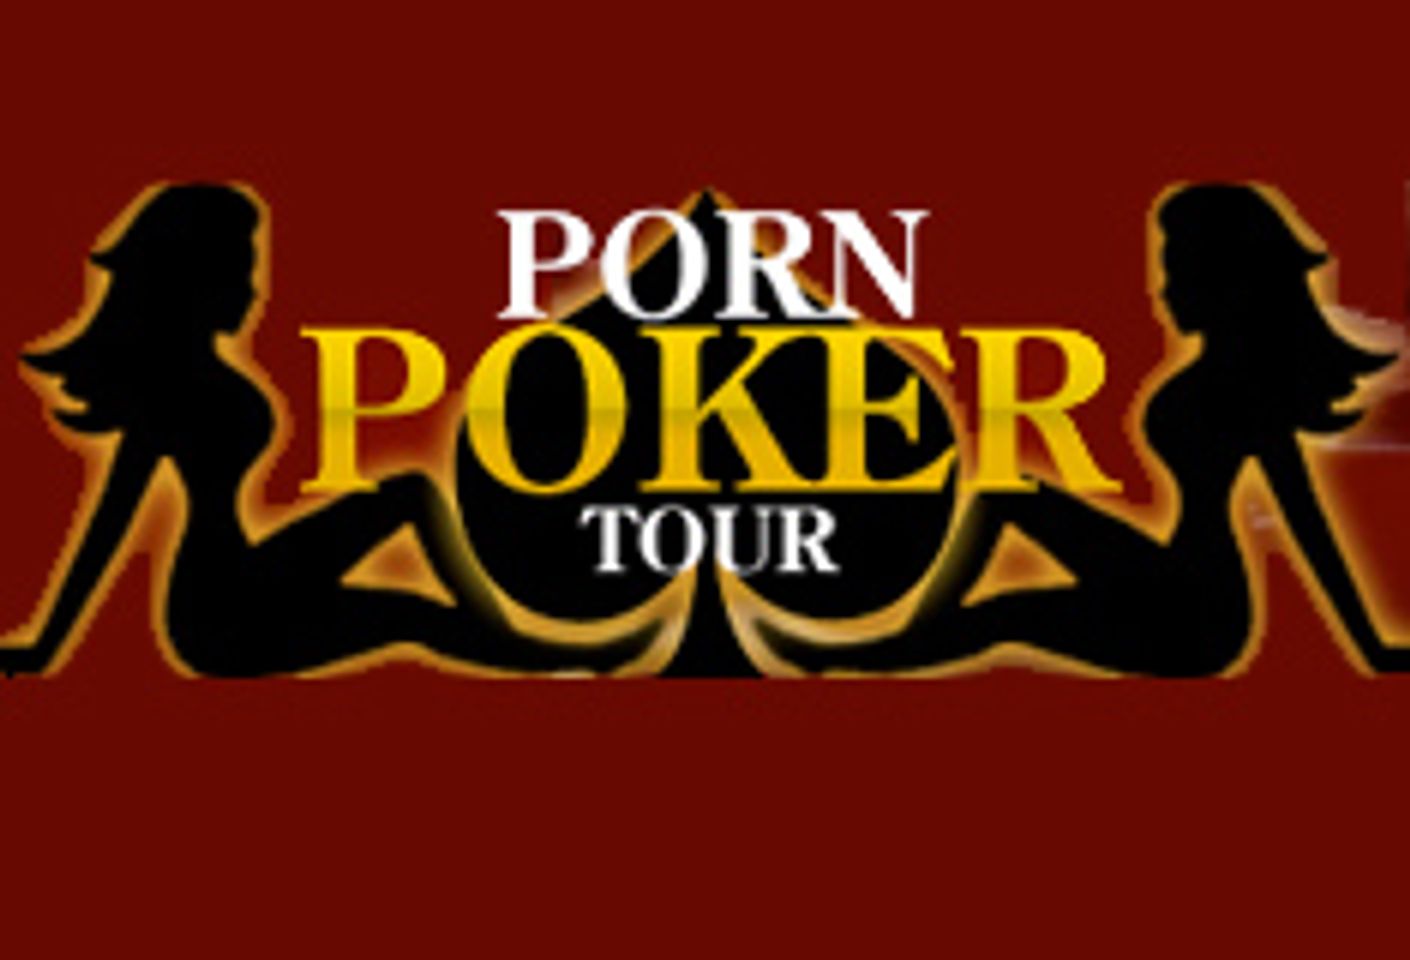 Porn Poker Tour Announces L.A. Winners